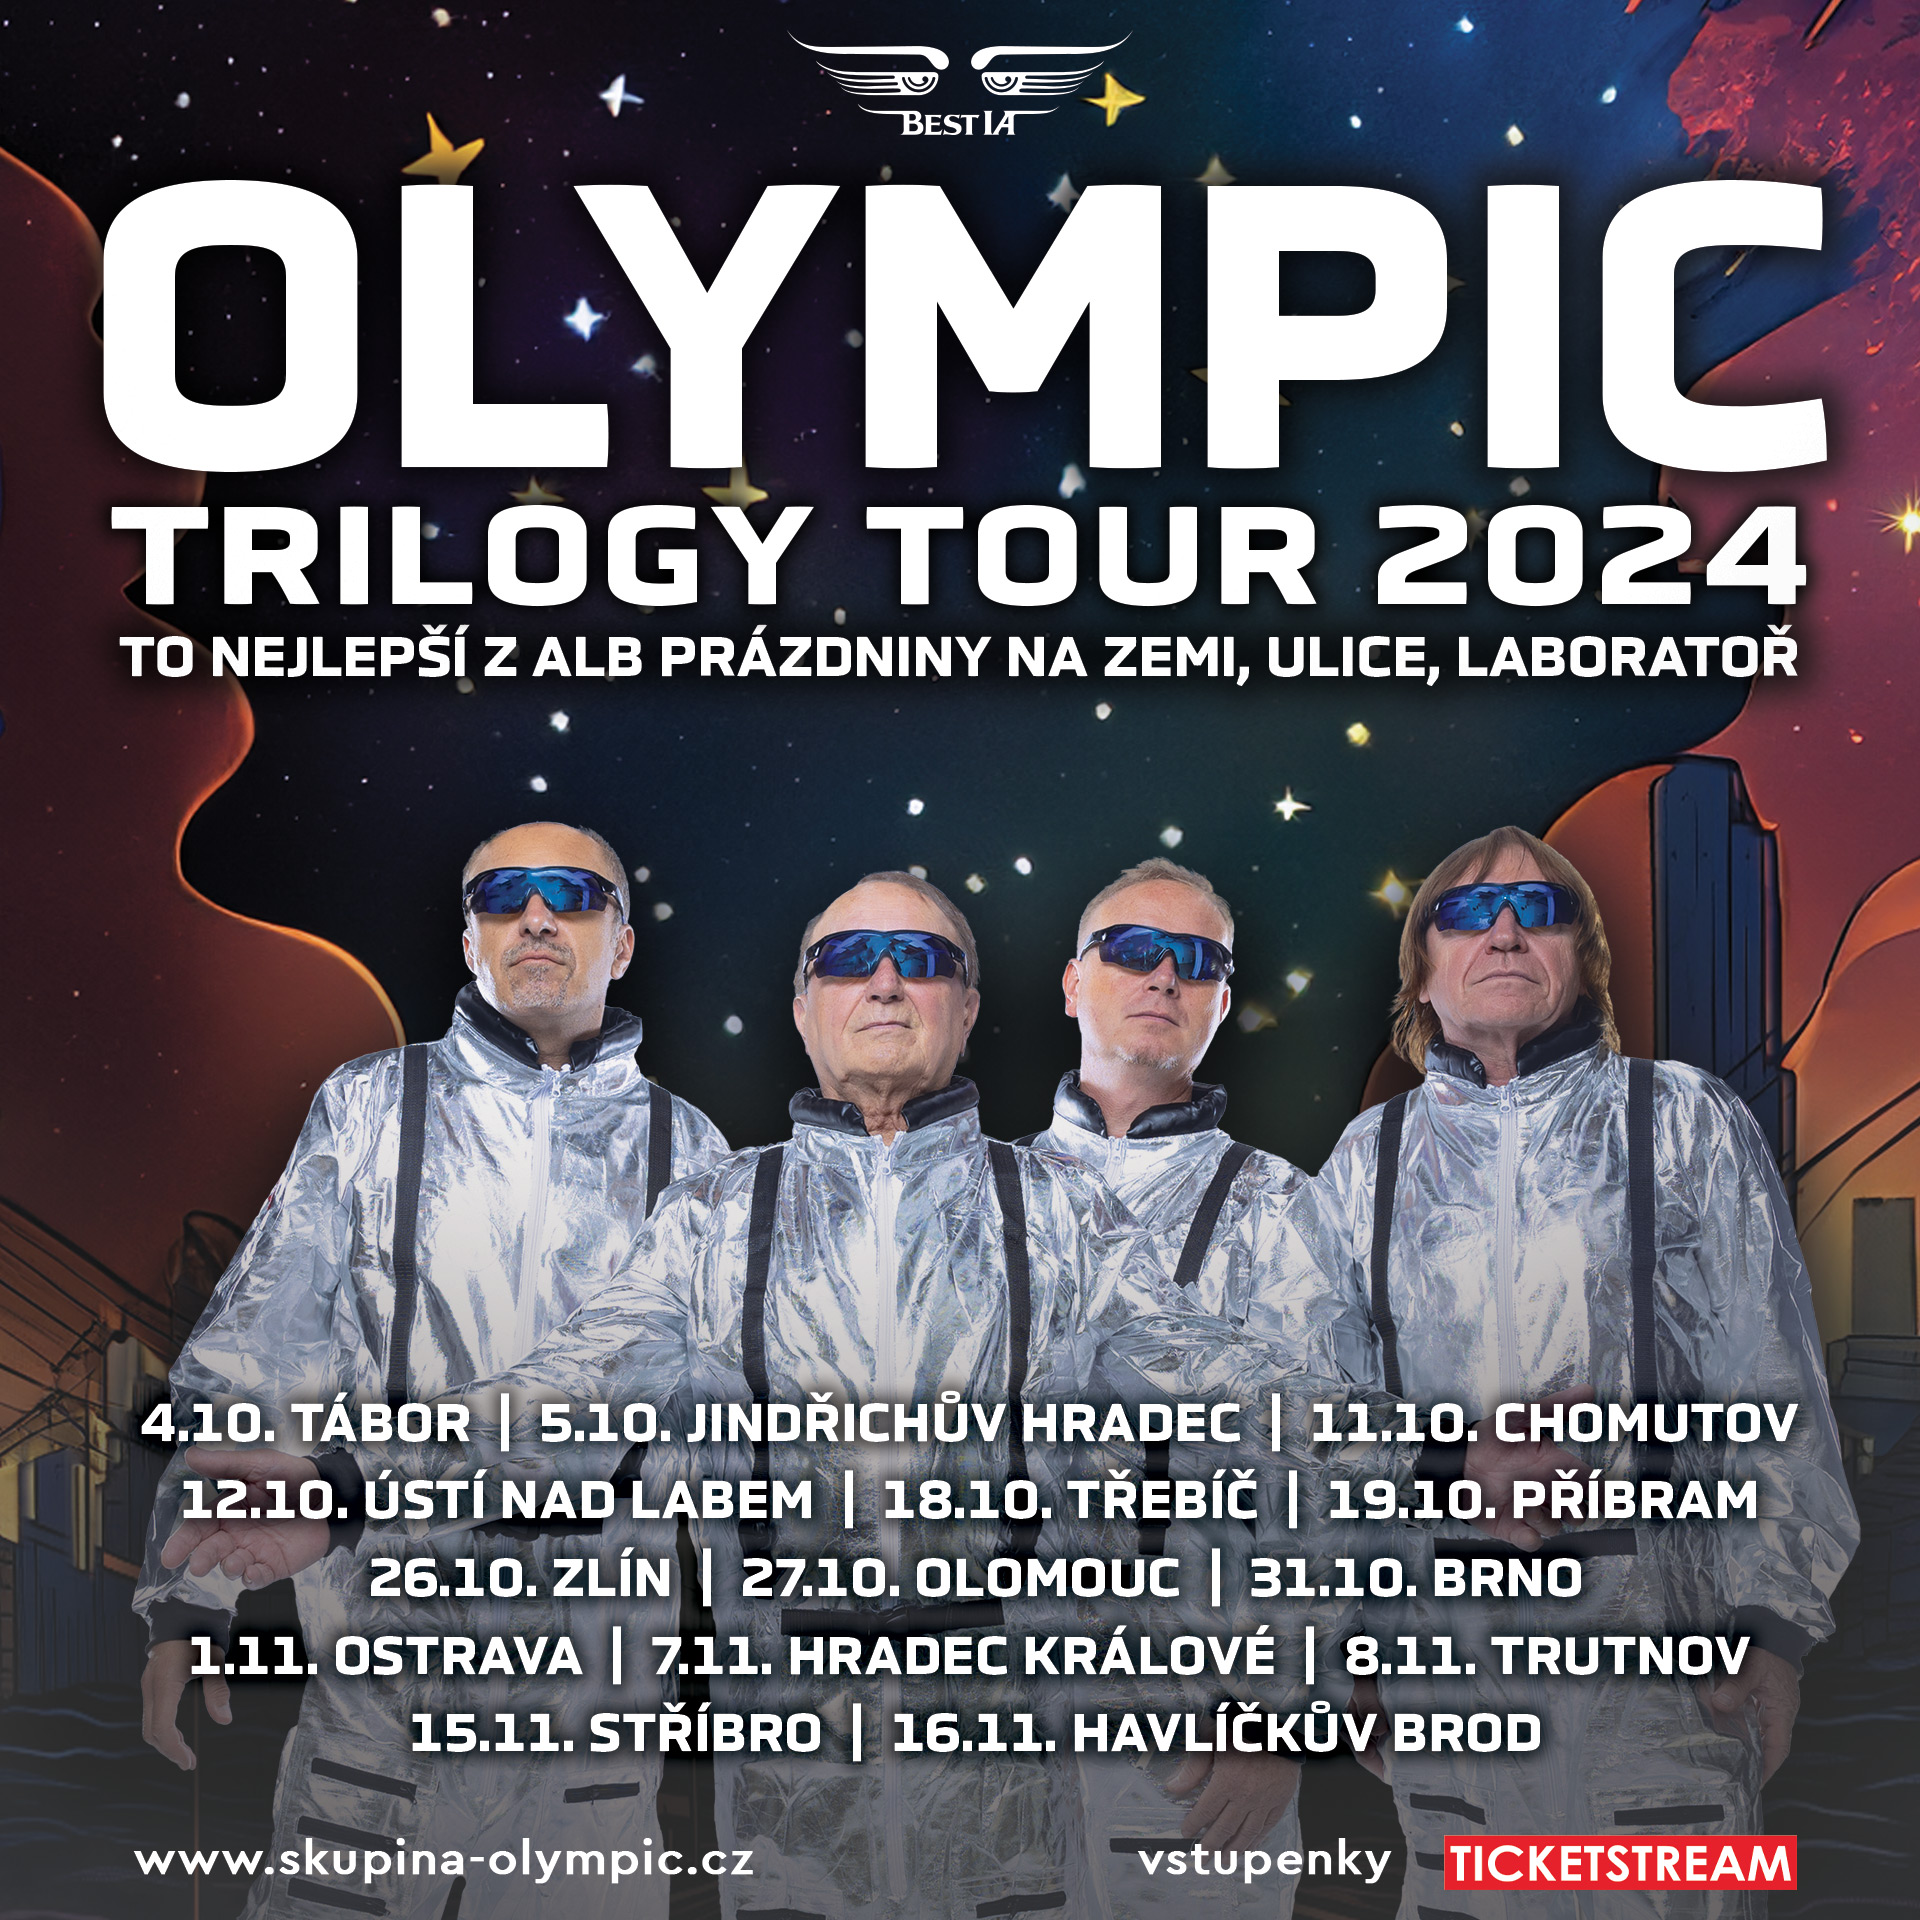 Koncert OLYMPIC- Zlín- TRILOGY TOUR 2024 -Kongresové centrum Zlín